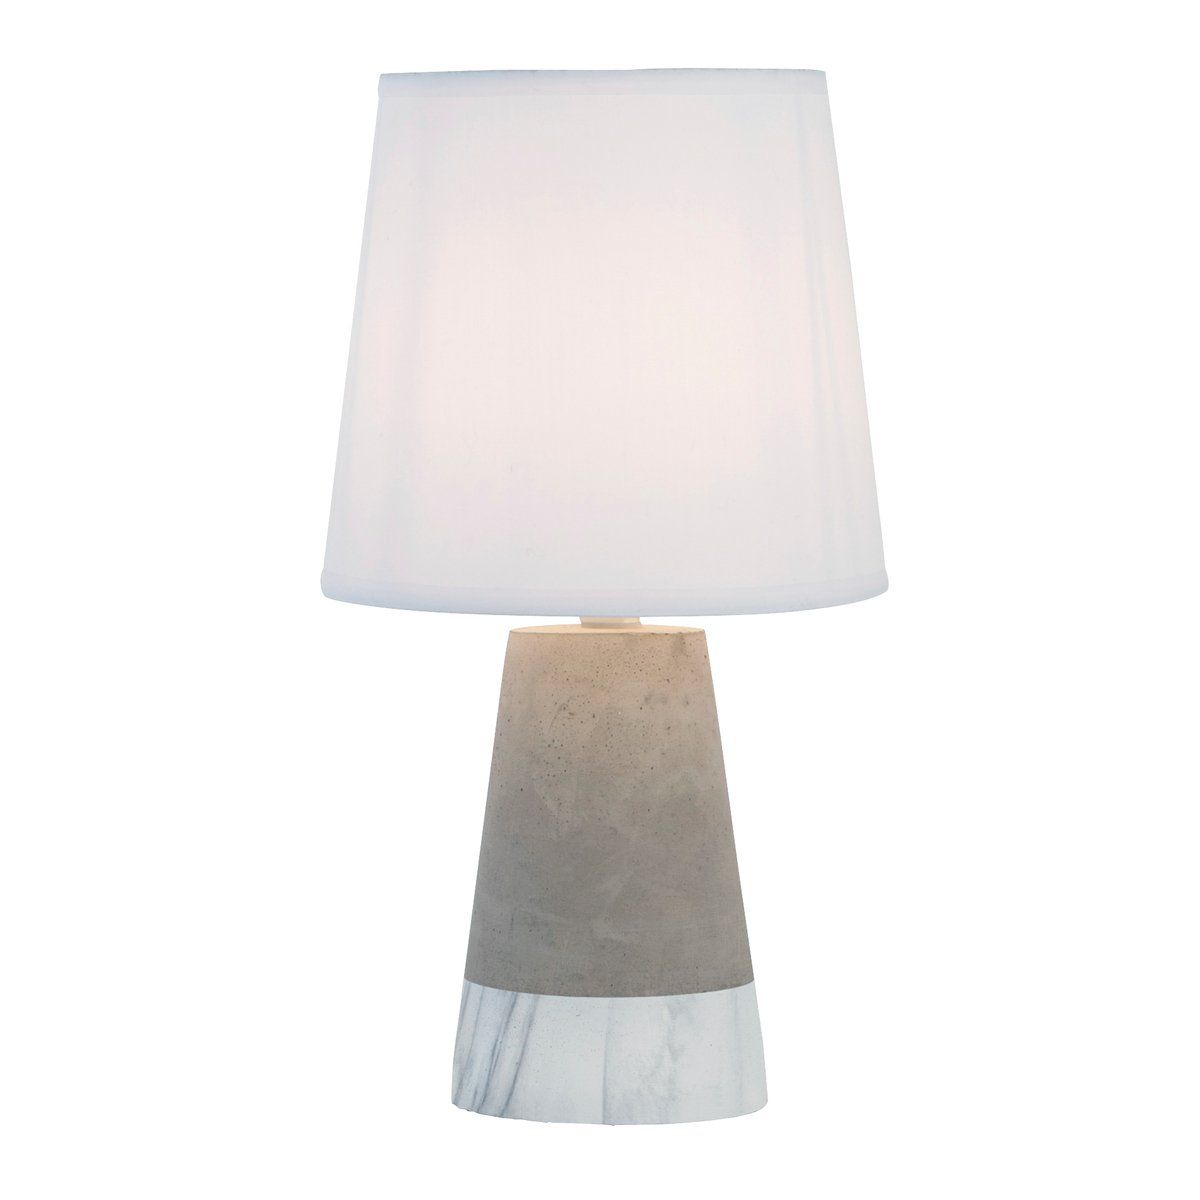 Lampe CHARDON blanche et grise en béton et tissu